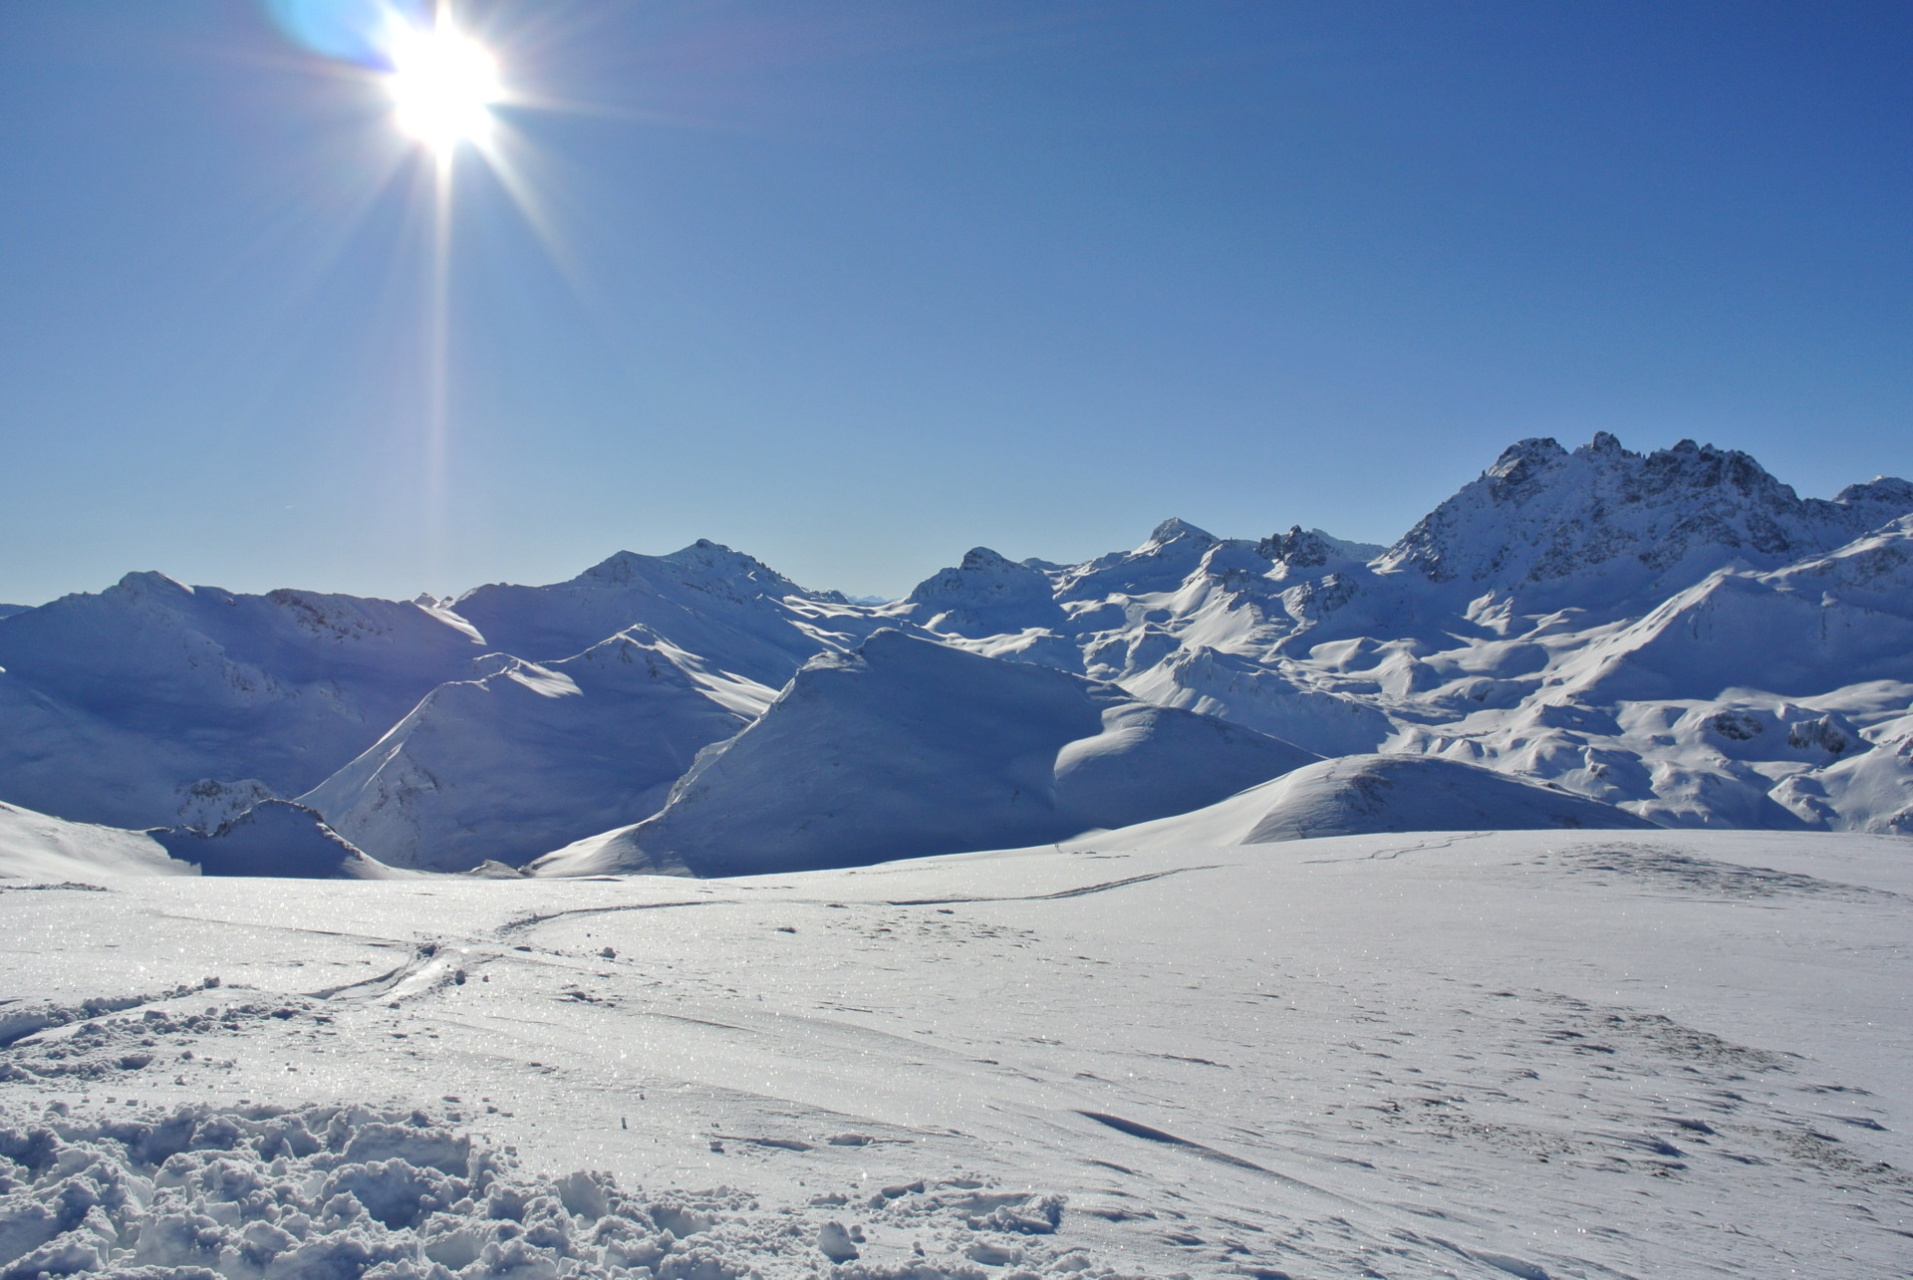 Alpen - Nieuwe sneeuwdump in de maak?